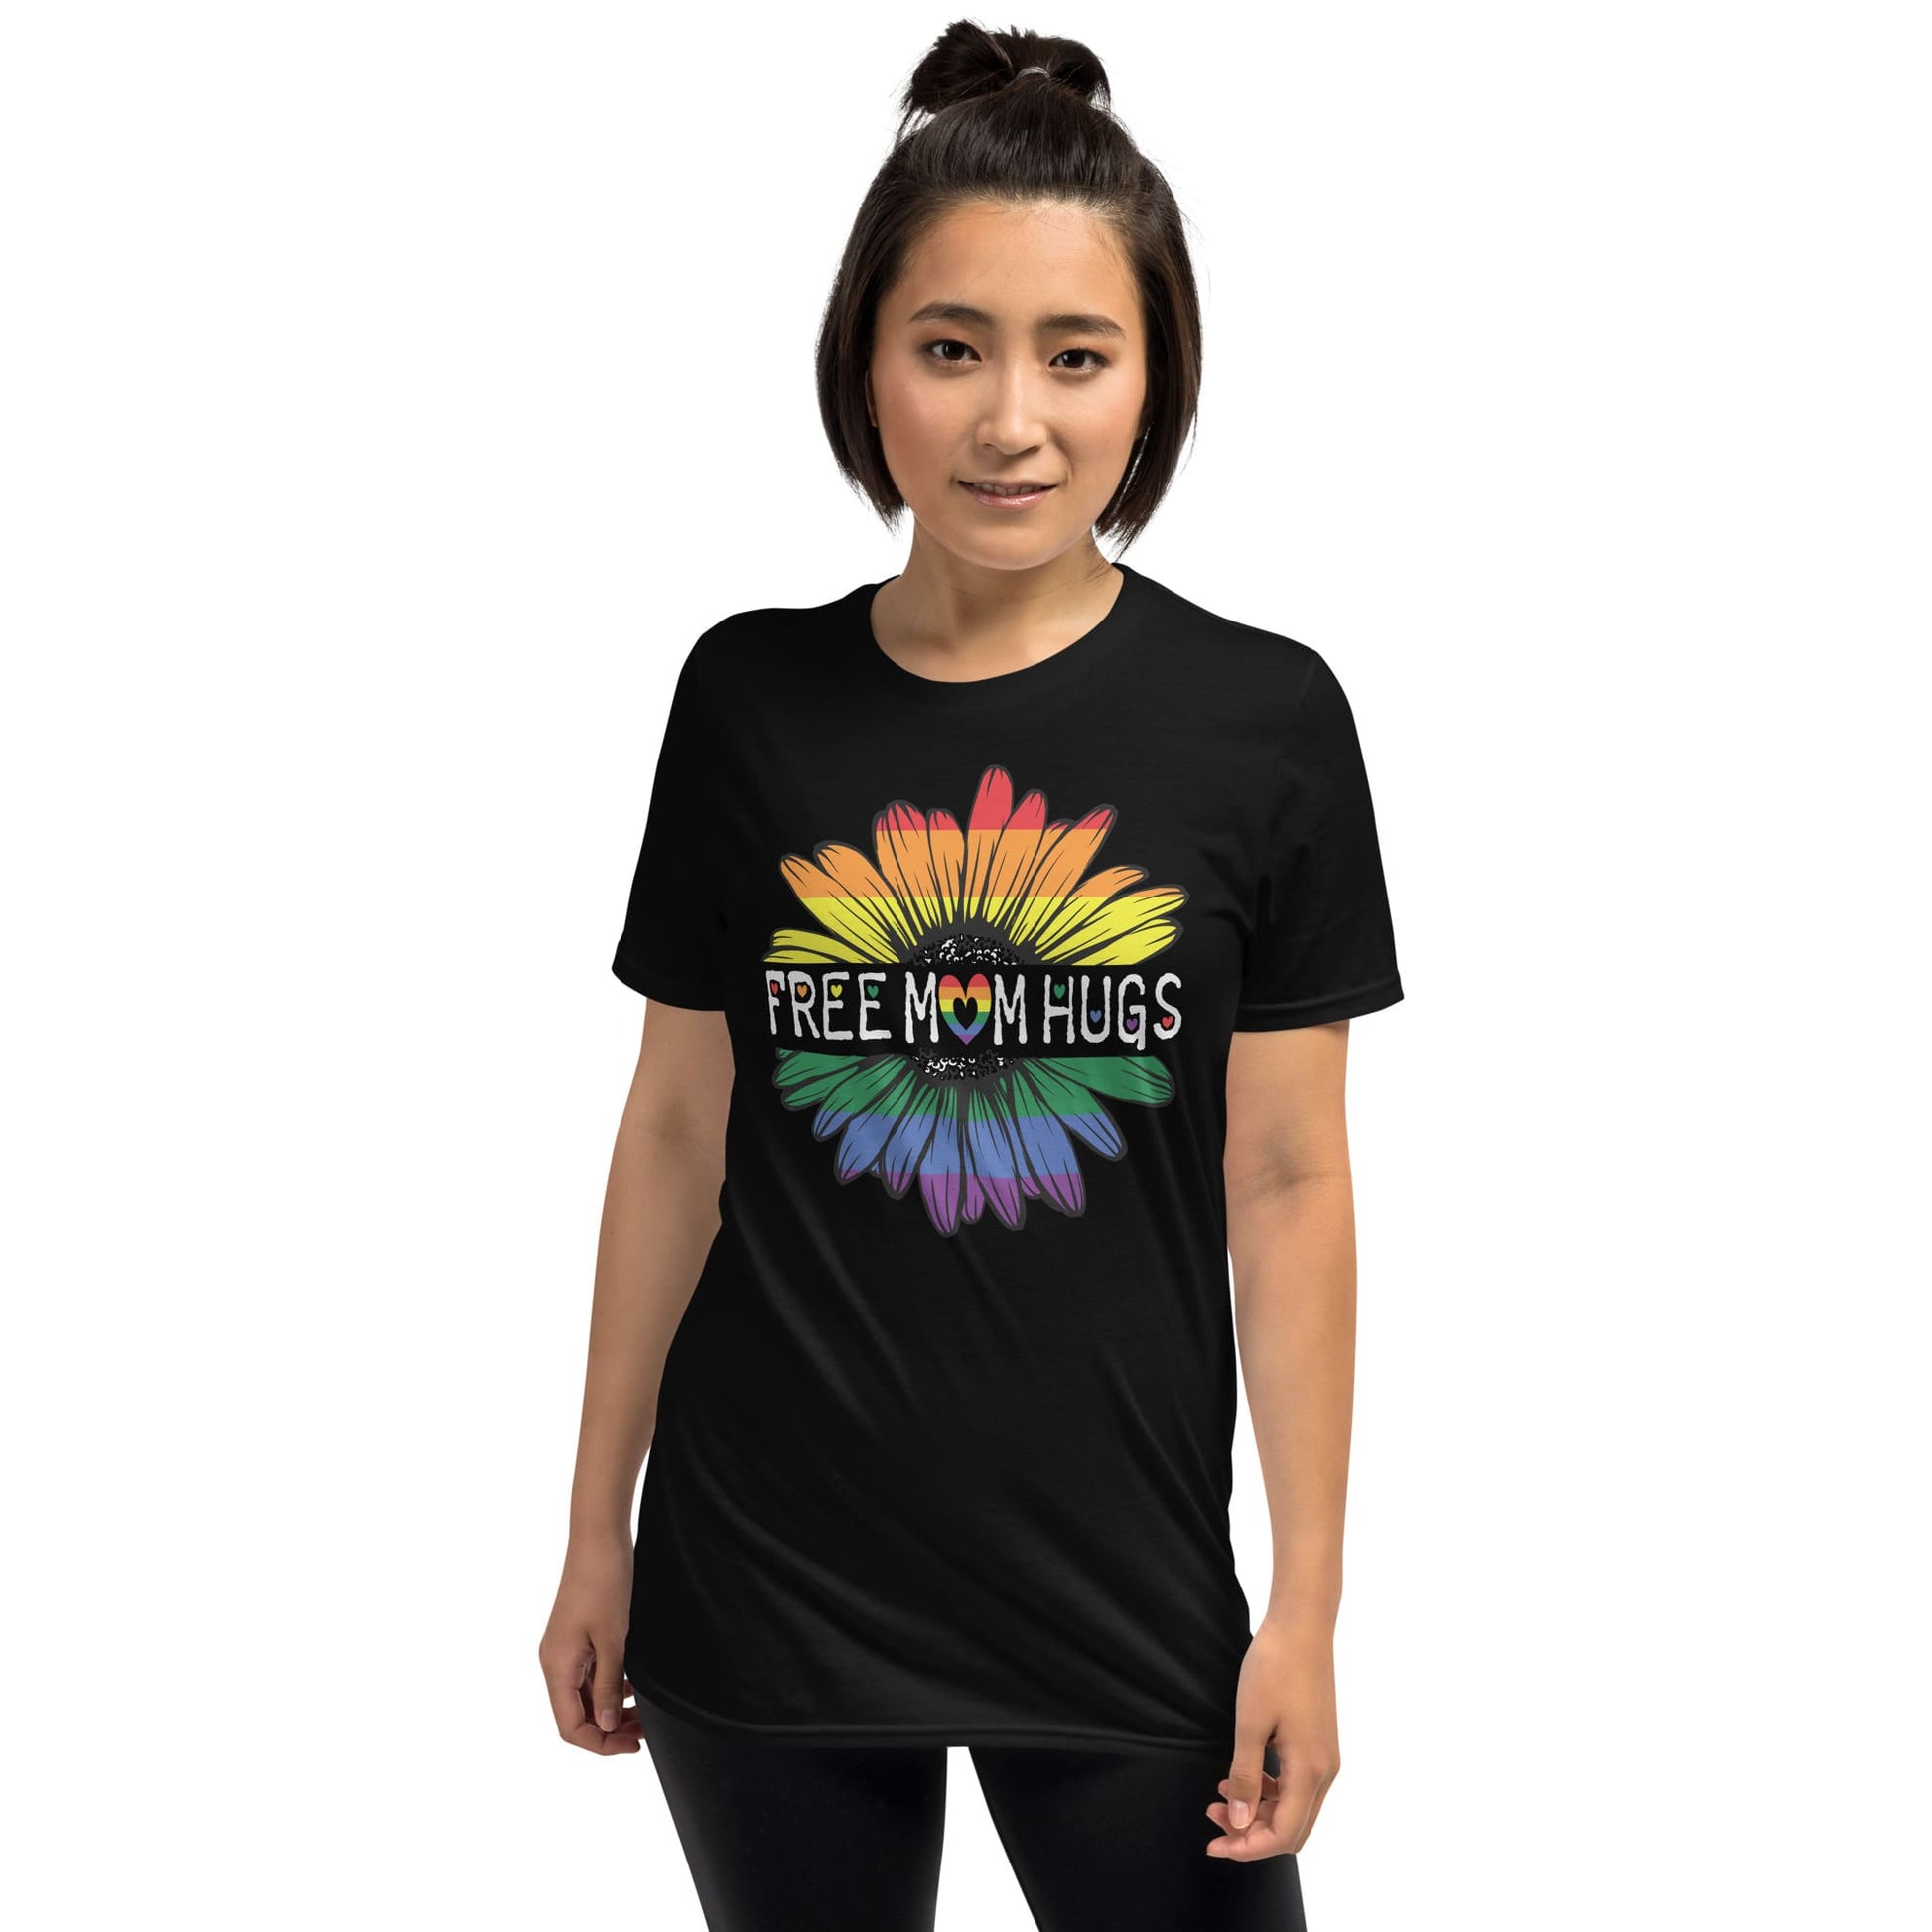 LGBTQ ally shirt, free mom hugs rainbow pride, model black